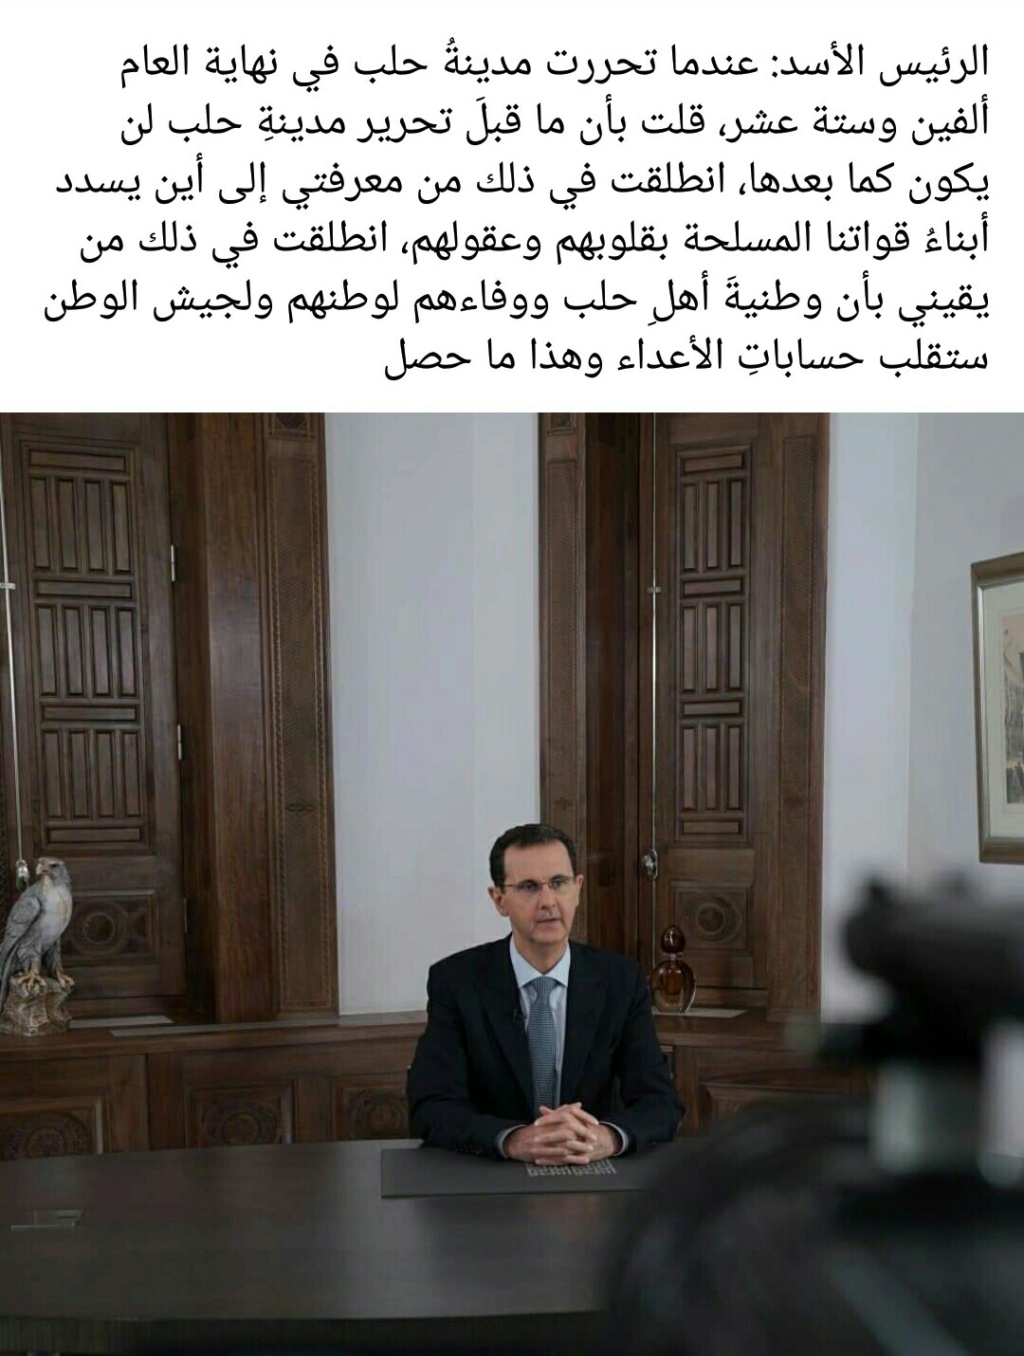 الرئيس السوري بشار الاسد يعلن انتصار حلب و استمرار التحرير لكل سورية Screen79